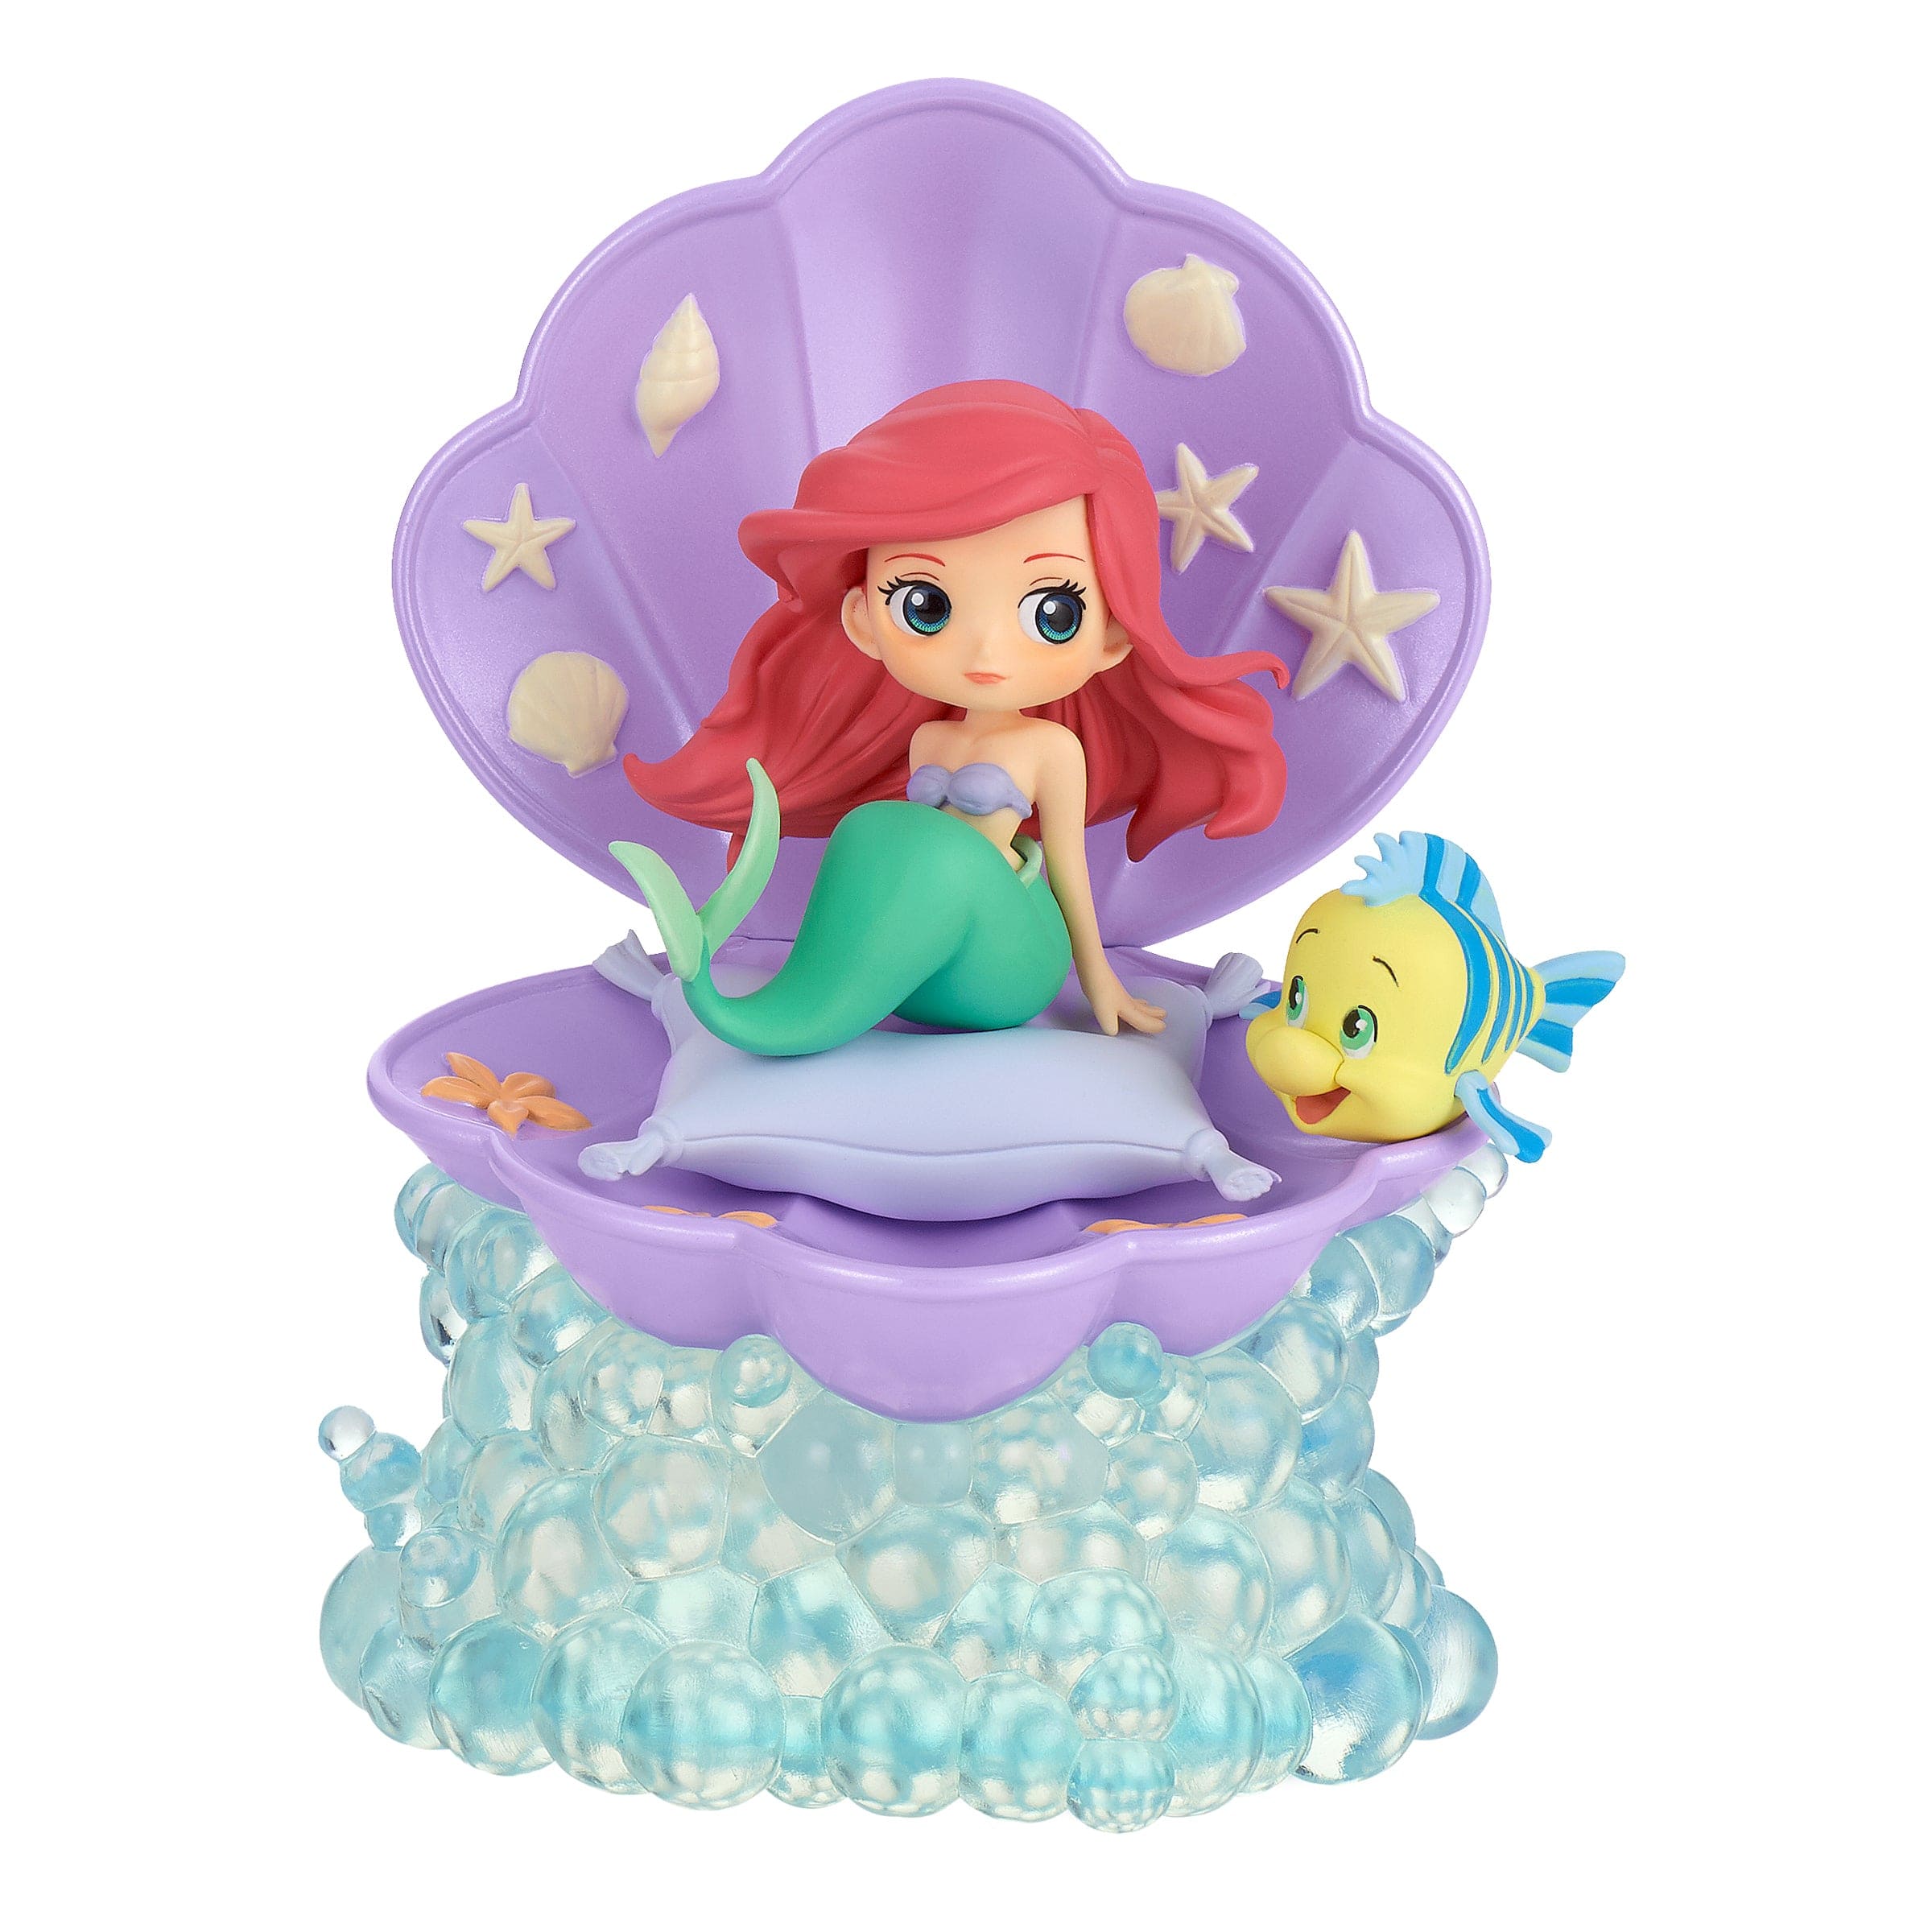 Little Buddy Disney Stories Ariel & Flounder Q posket Figure ver.B (Purple Clamshell) Kawaii Gifts 4983164176490